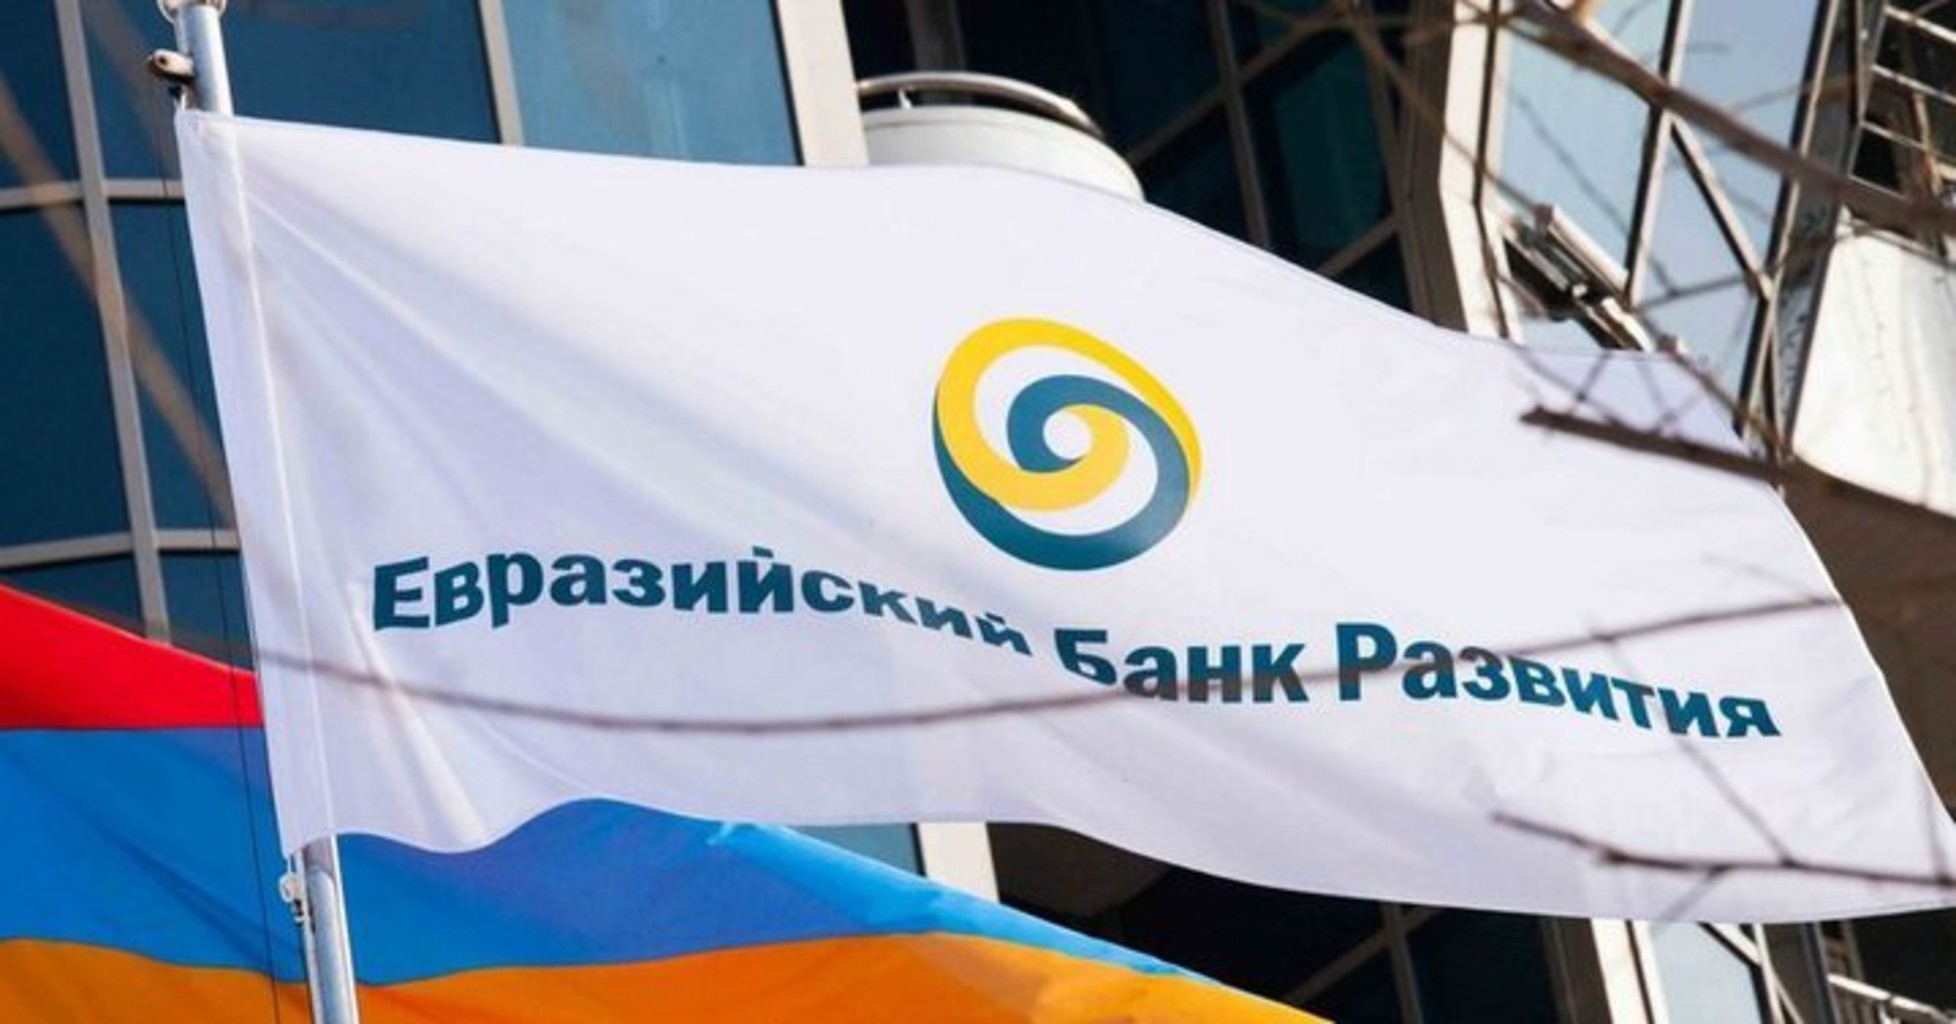 ЕАБР завершил размещение выпуска облигаций объемом 5 млрд рублей на Московской бирже